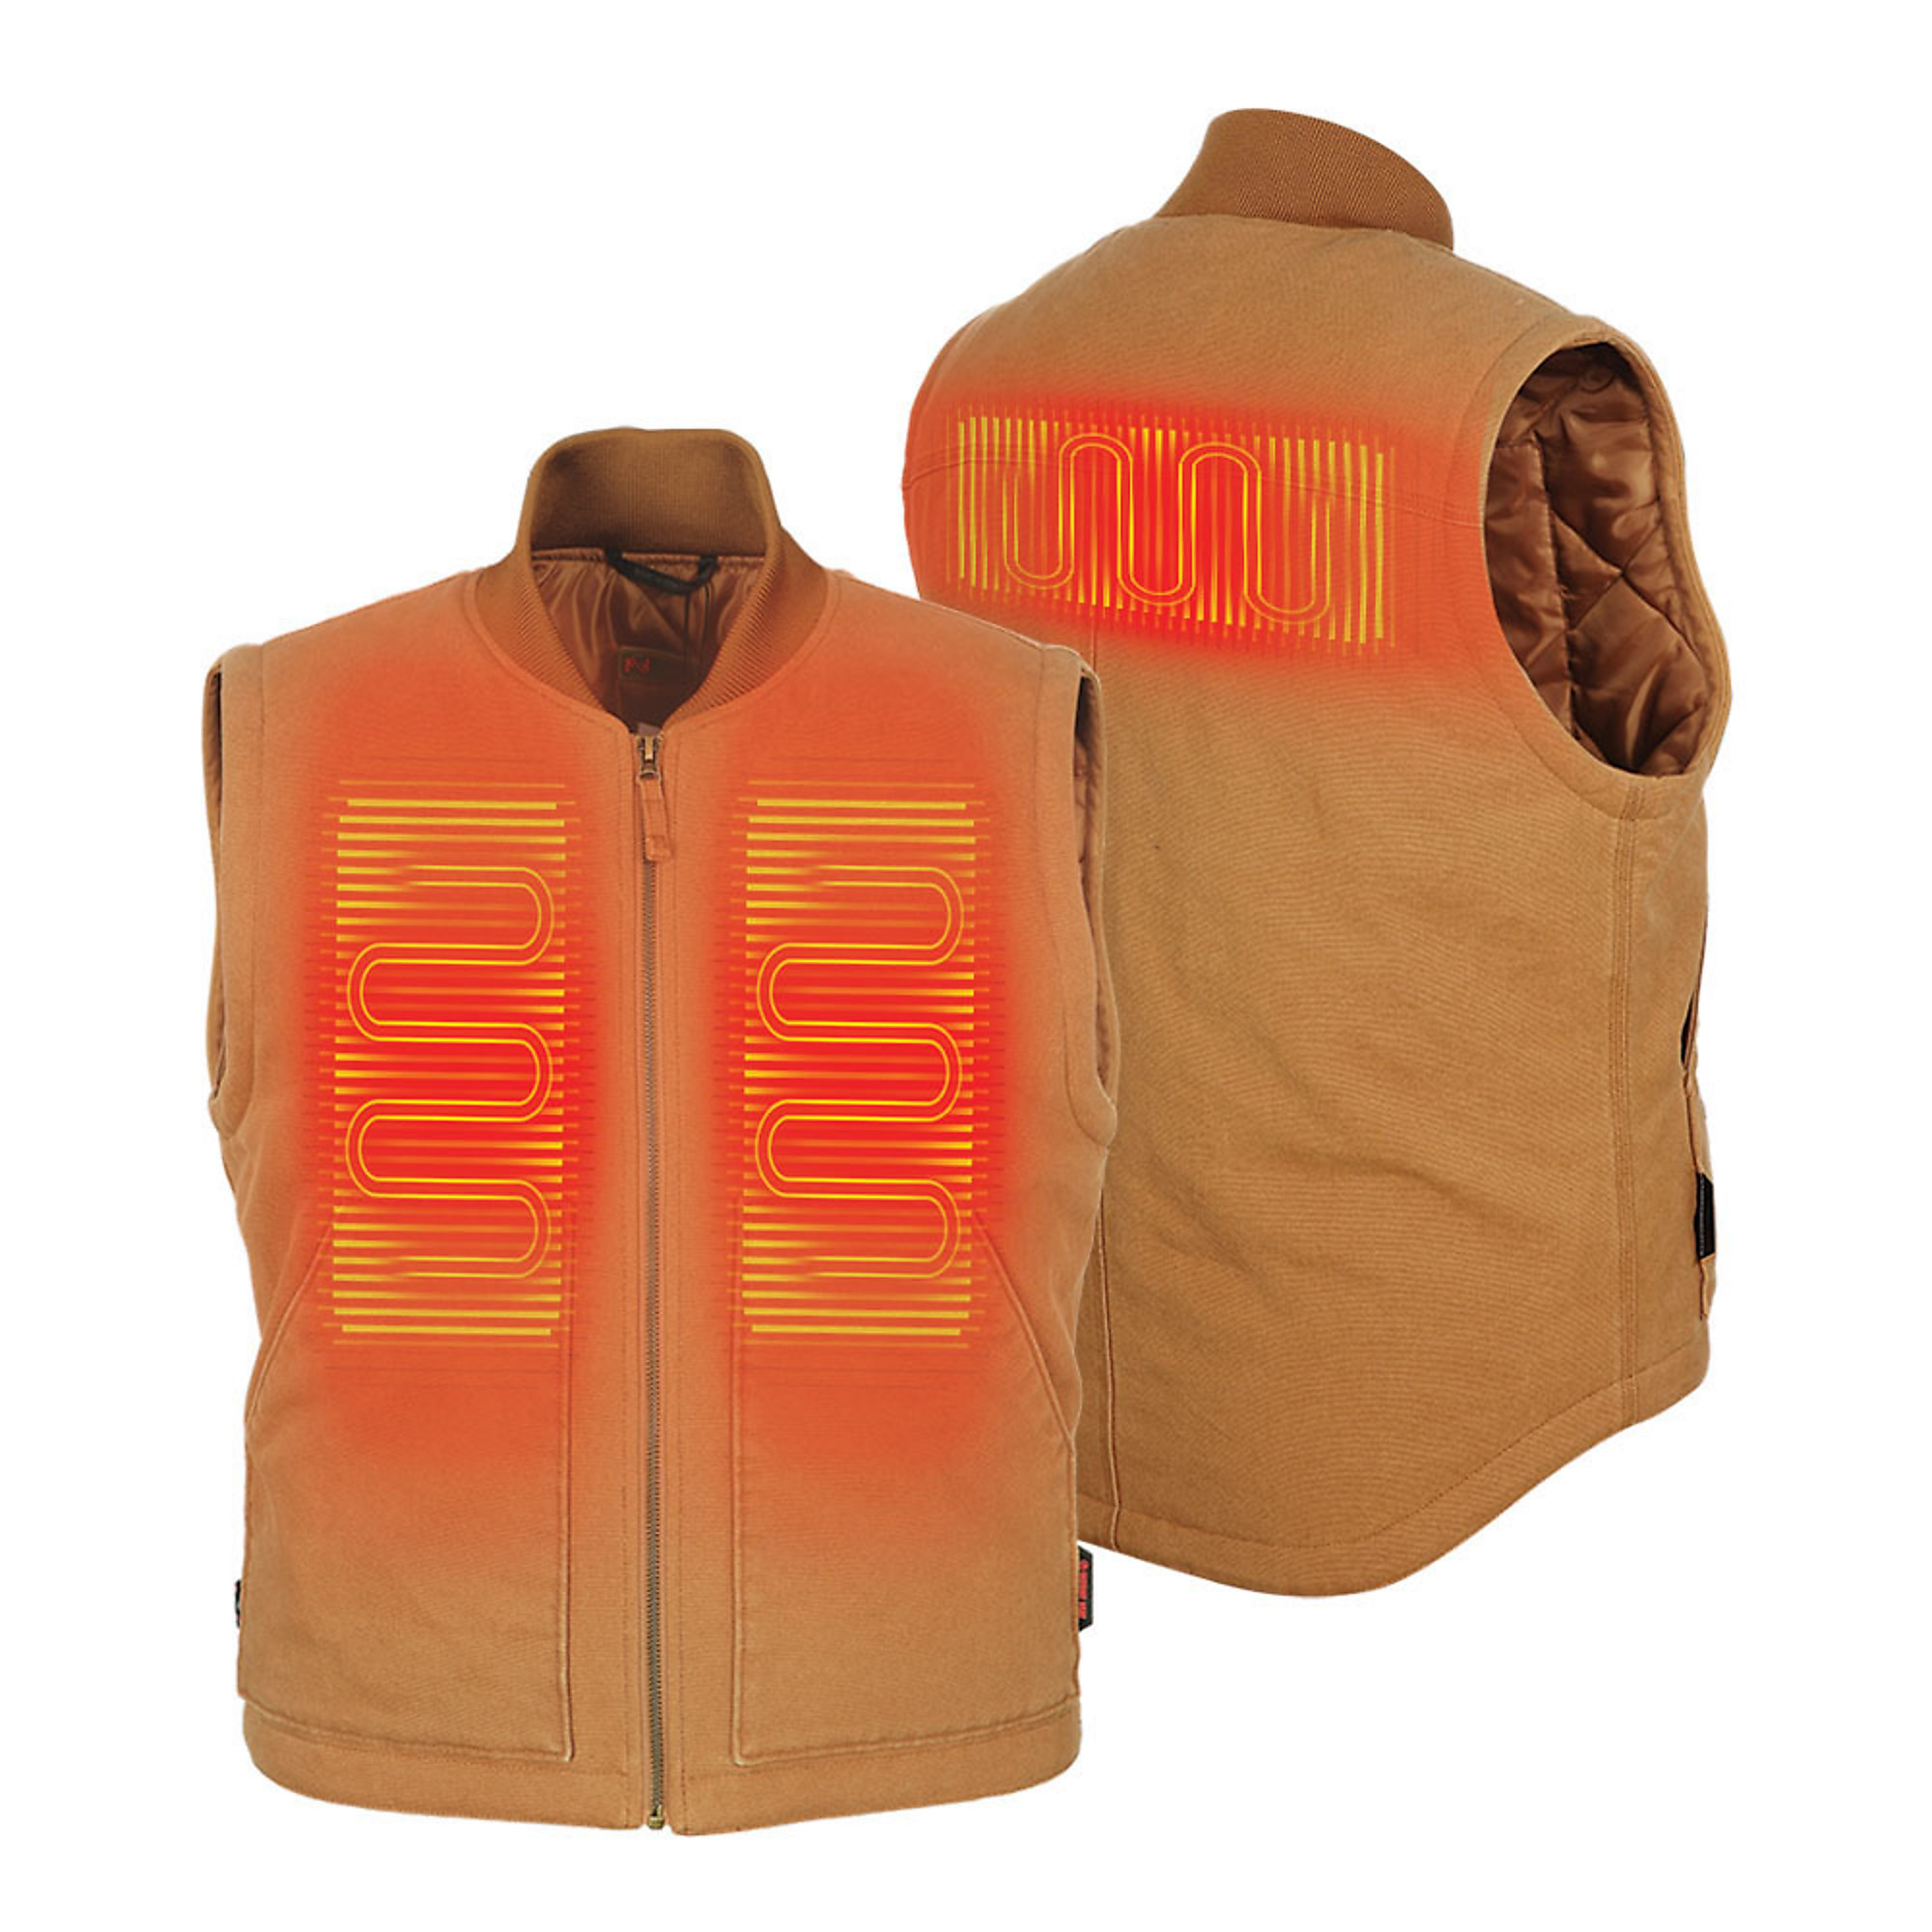 Fieldsheer, Men's Foreman 2.0 Vest with 7.4v Battery, Size XL, Color Tan, Model MWMV15130521